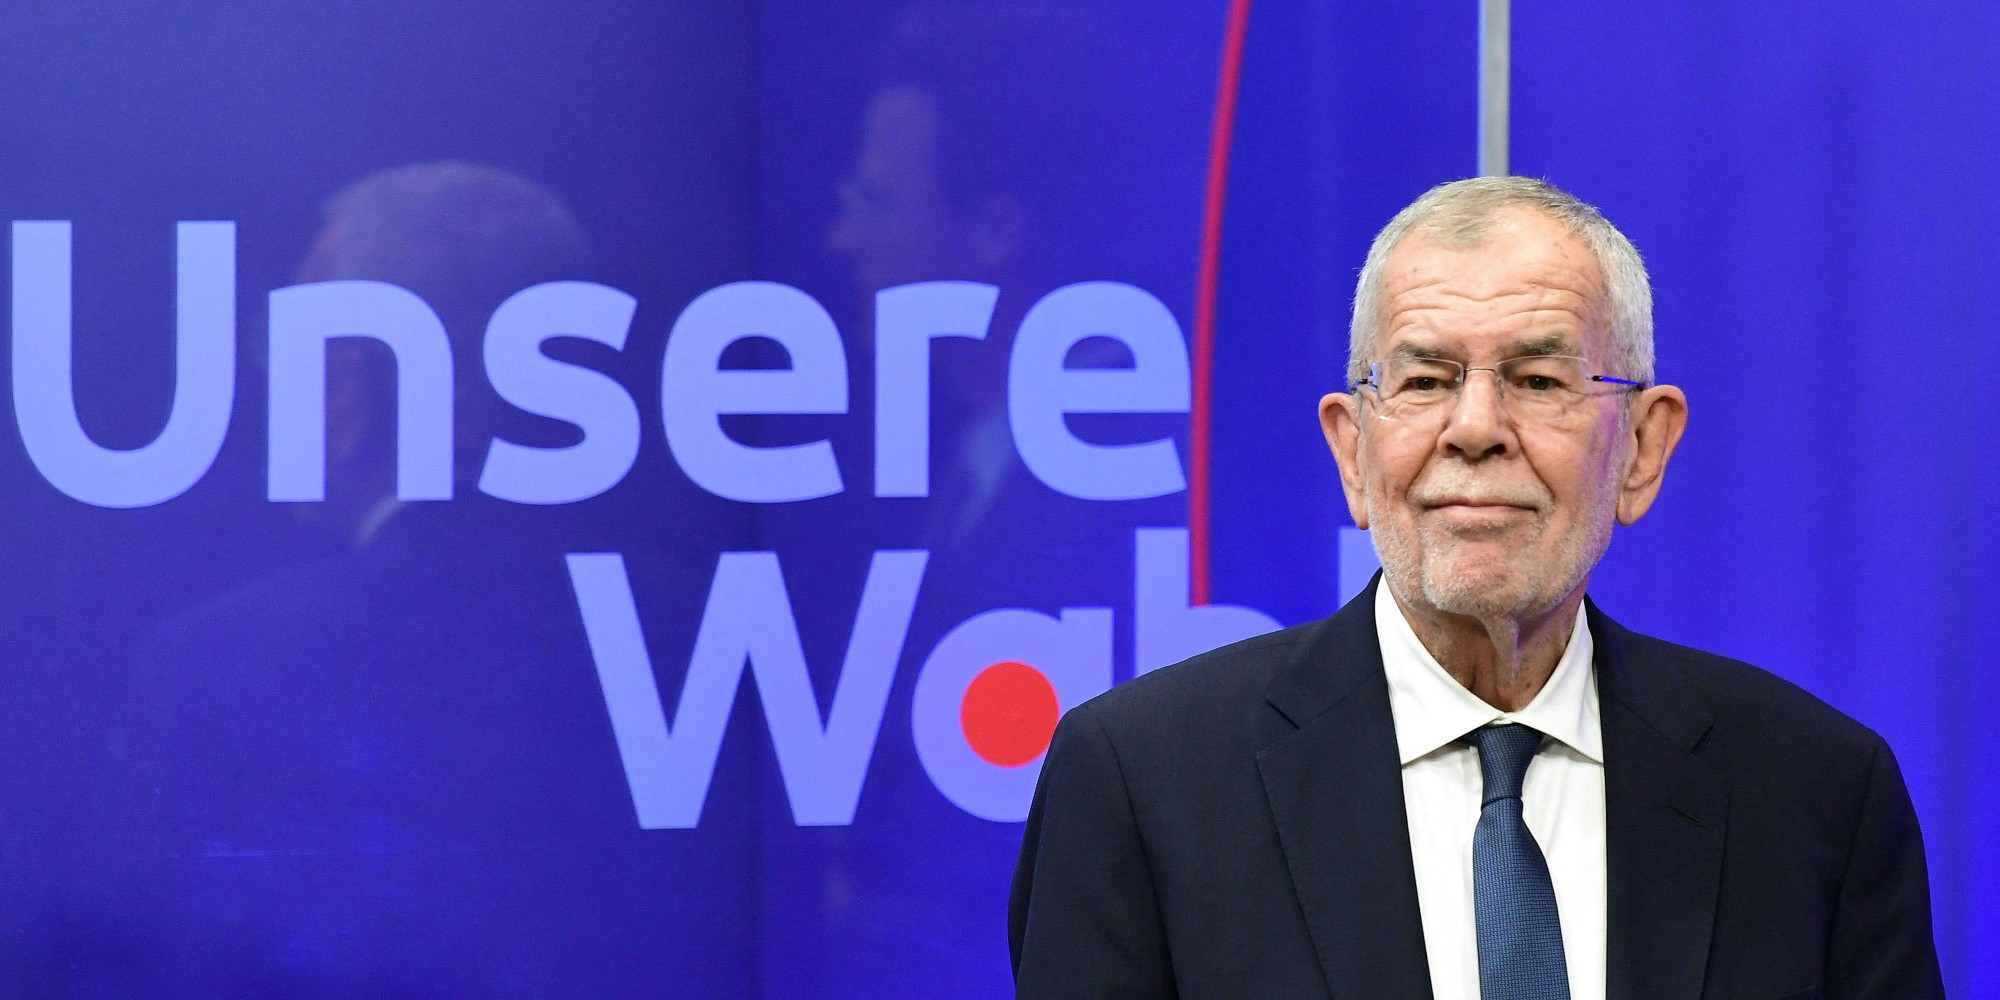 Austria: Outgoing Green President Van der Bellen was re-elected in the first ballot